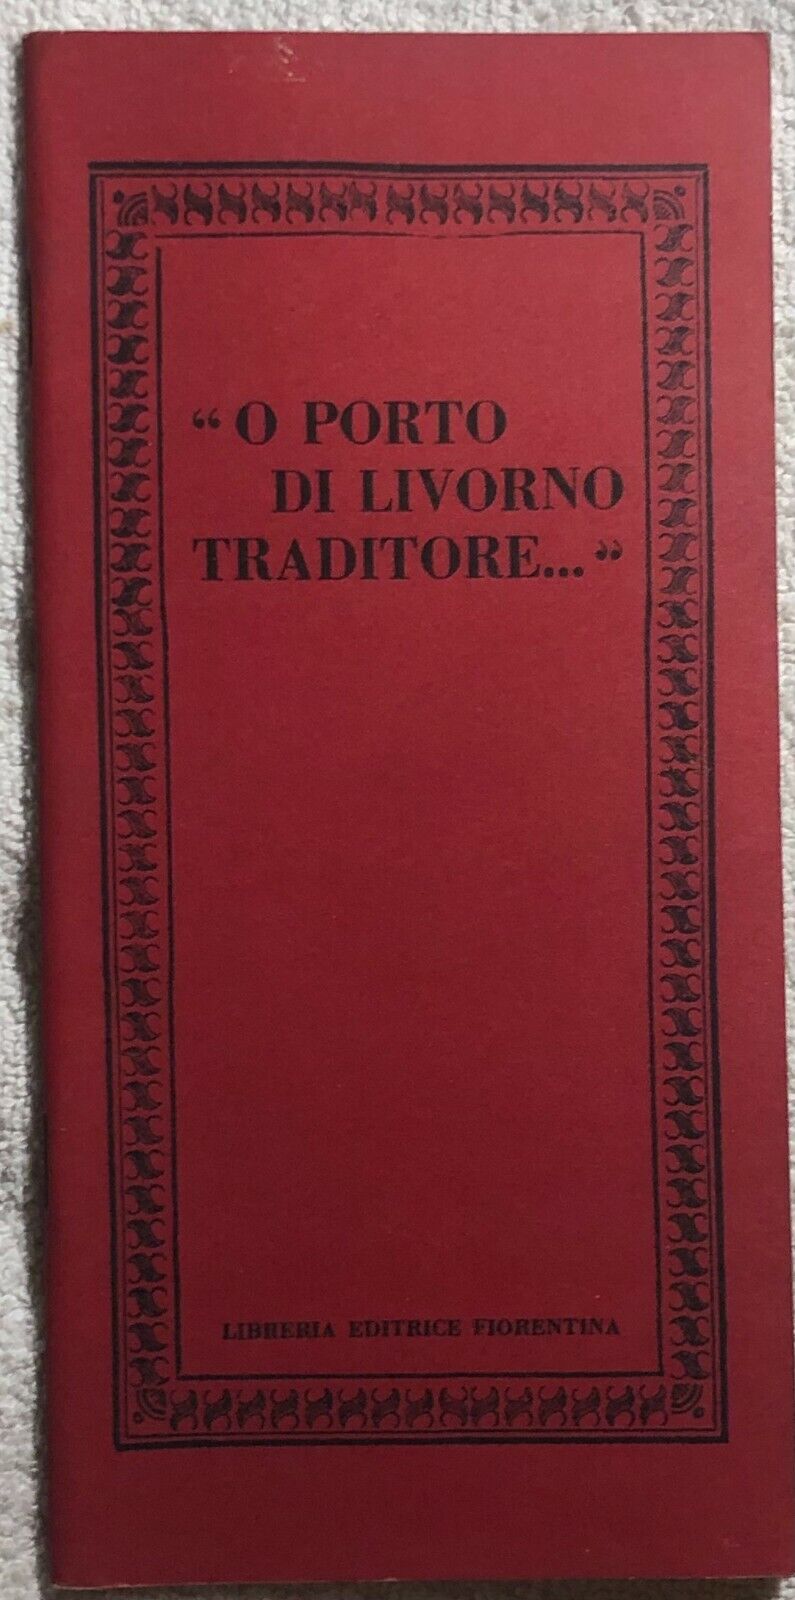 O porto di Livorno traditore di Aa.vv.,  1975,  Libreria Editrice Fiorentina